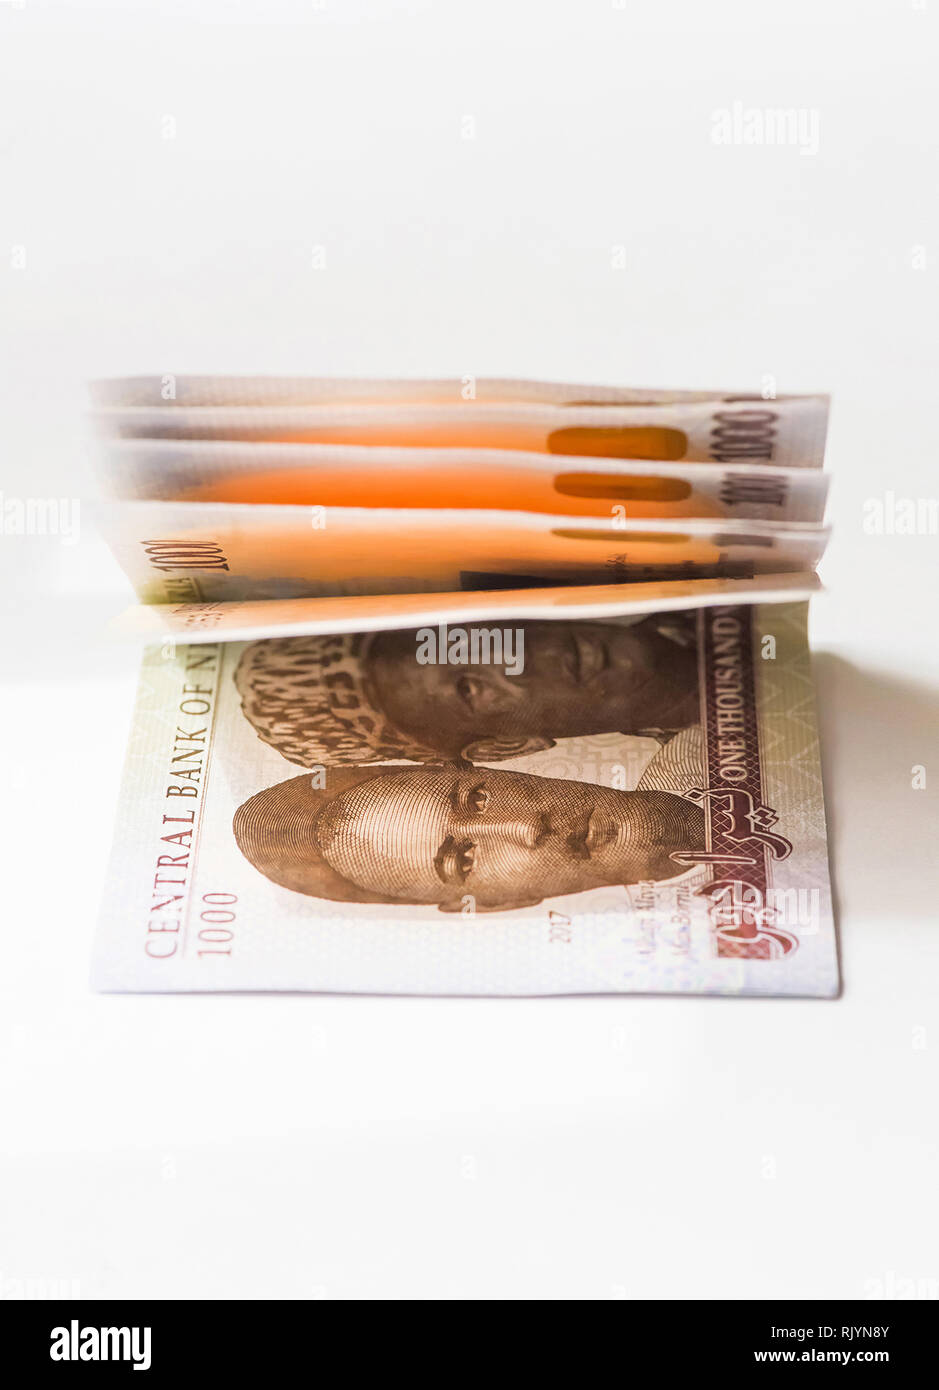 L'argent du Nigeria - une liasse de billets de 1 000 naira sur une table Banque D'Images